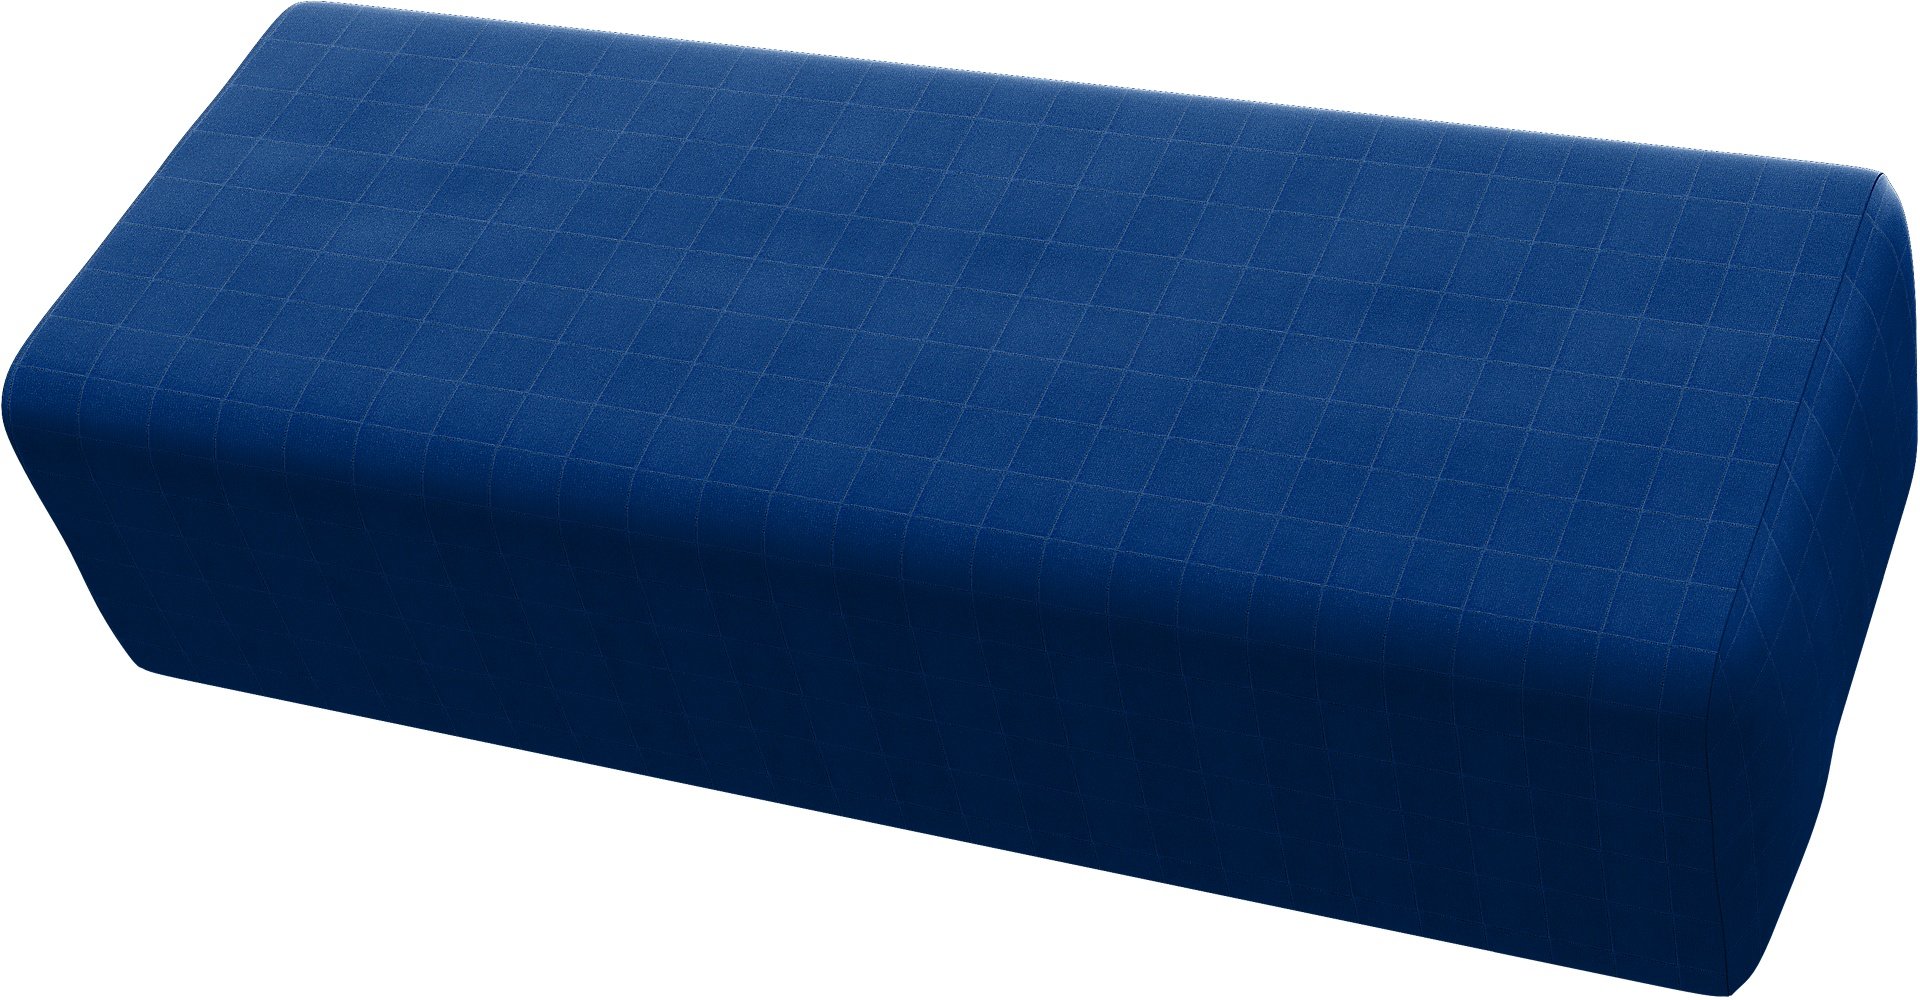 IKEA - Jattebo Headrest Cushion Cover, Lapis Blue, Velvet - Bemz